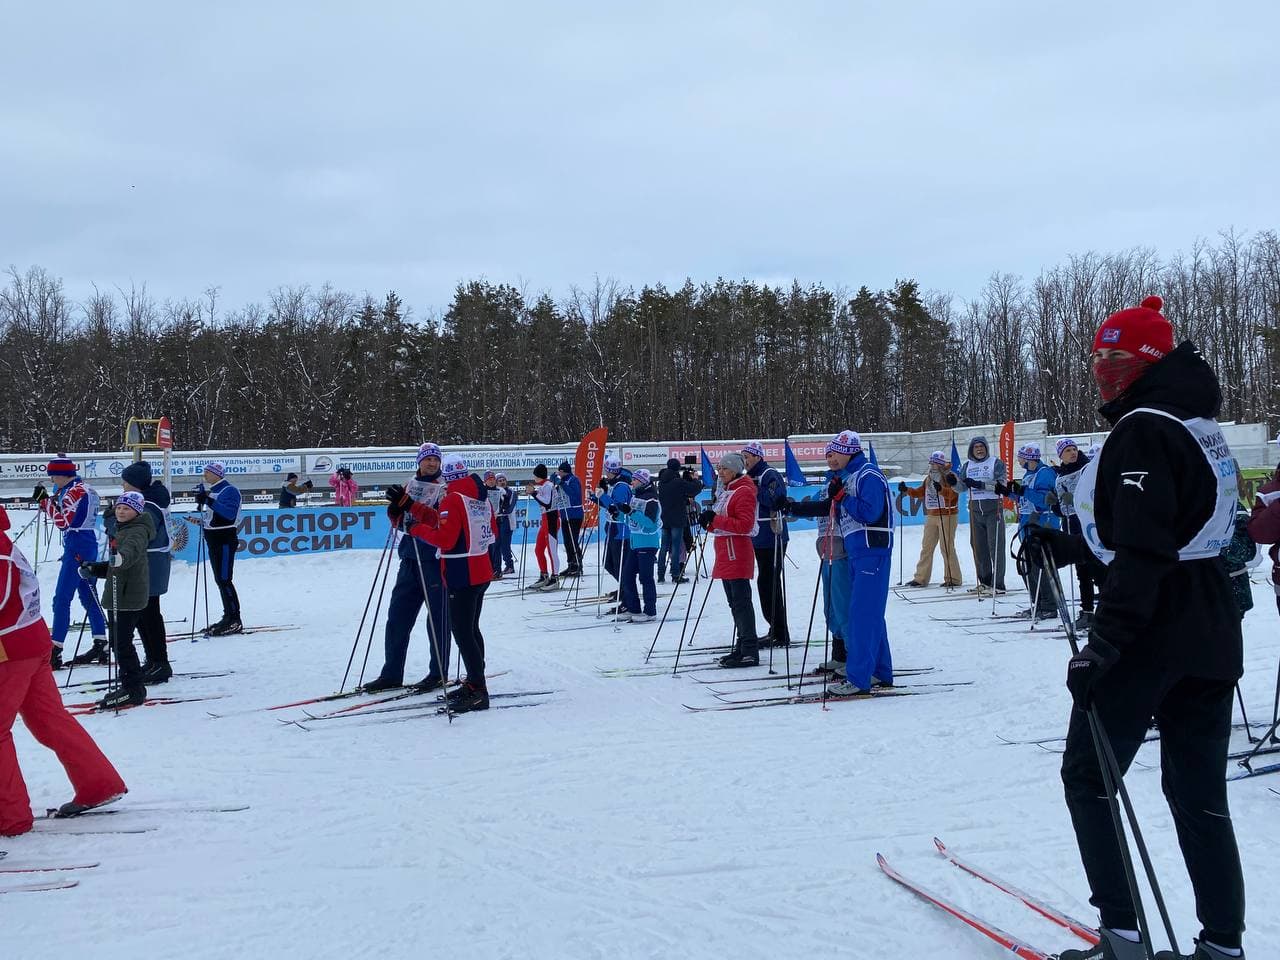 Сегодня в Ульяновске прошла массовая лыжная гонка